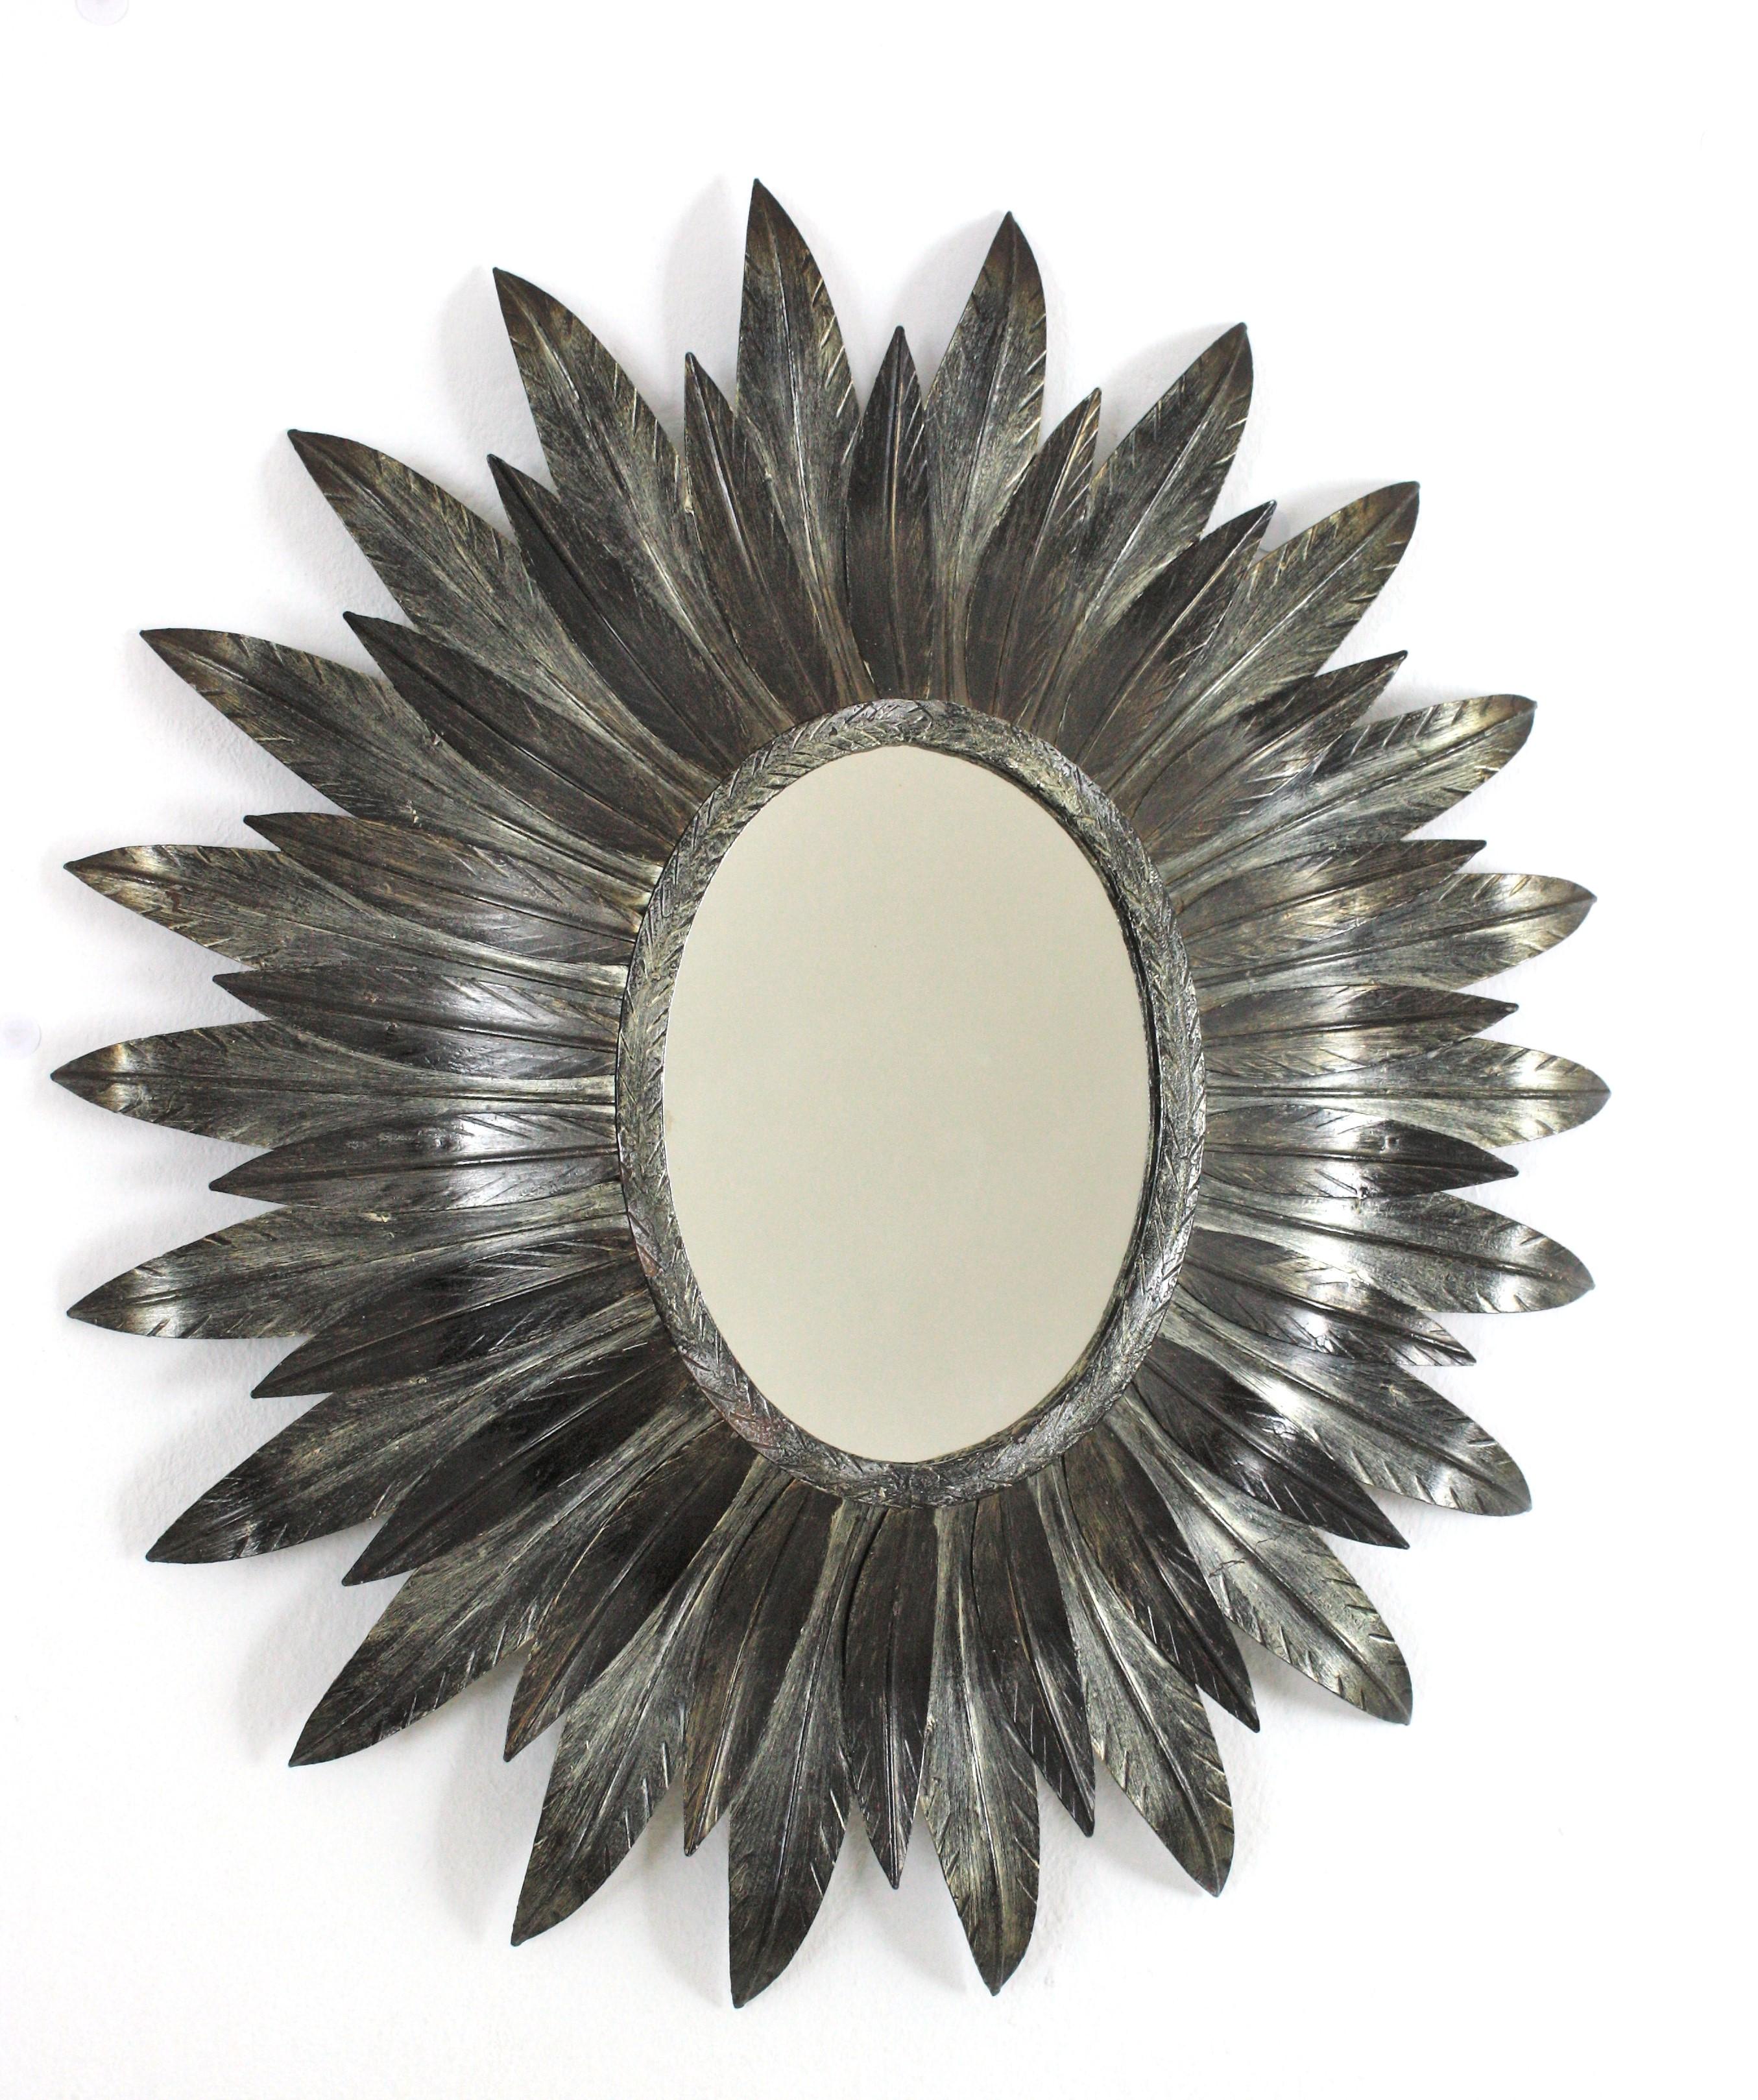 Auffälliger ovaler Sunburst-Spiegel aus versilbertem, vergoldetem Metall Spanien, 1950-1960.
Dieser Wandspiegel mit Sonnenschliff verfügt über ein ovales Glas, das von geschwungenen versilberten Metallblättern in zwei Größen eingerahmt